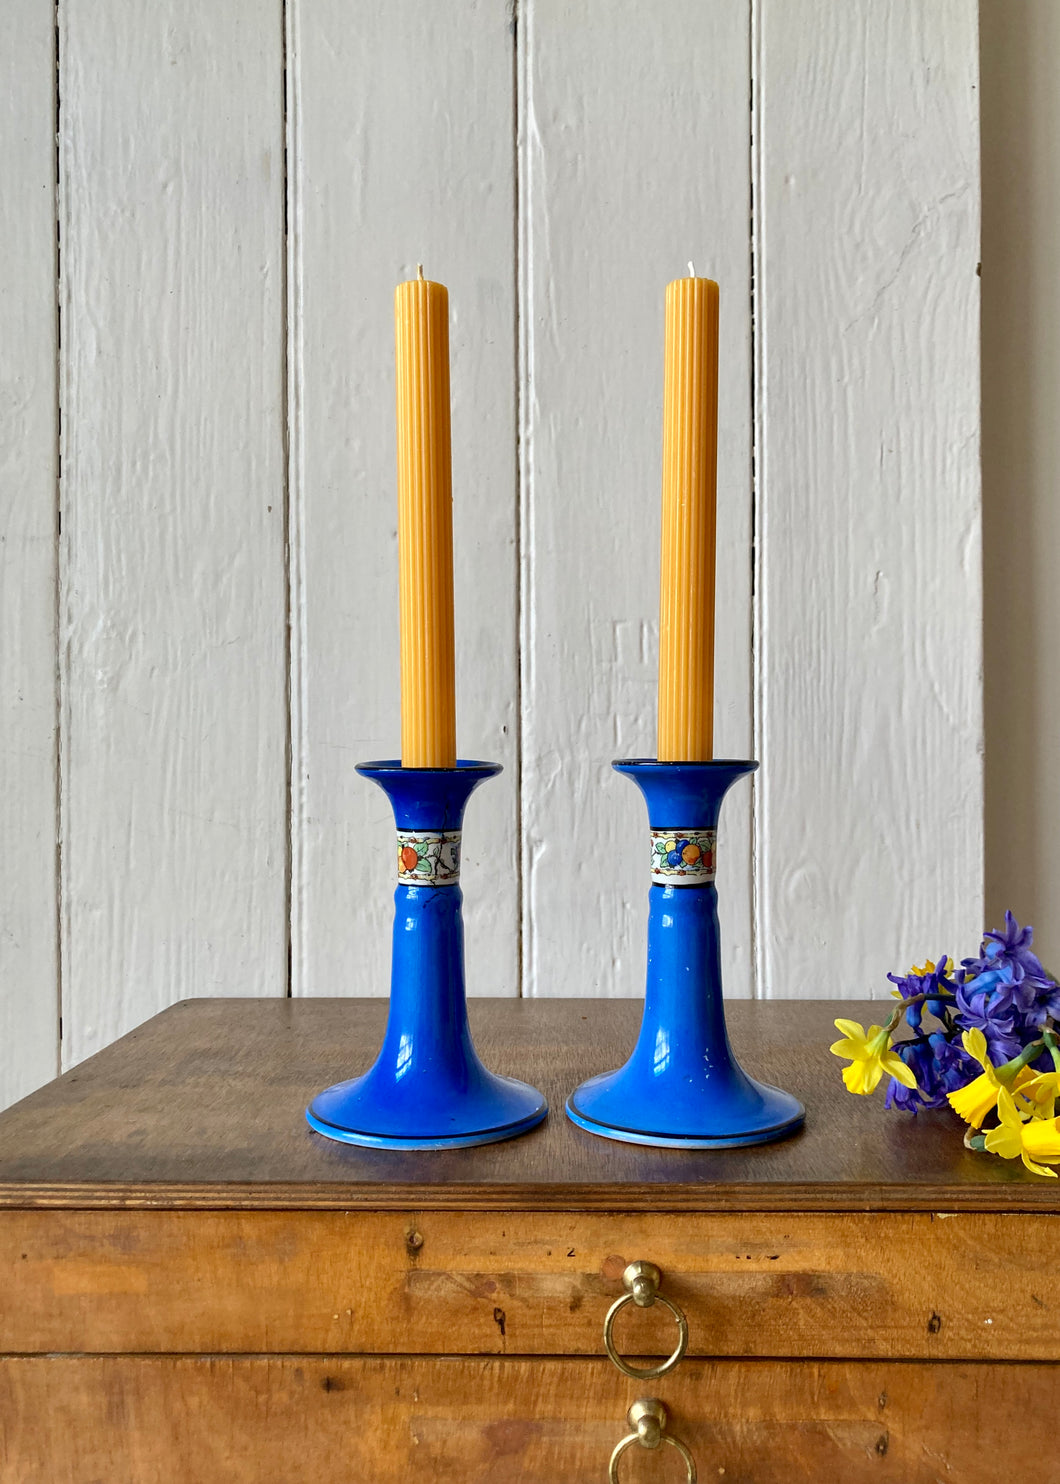 Cobalt blue china candlesticks